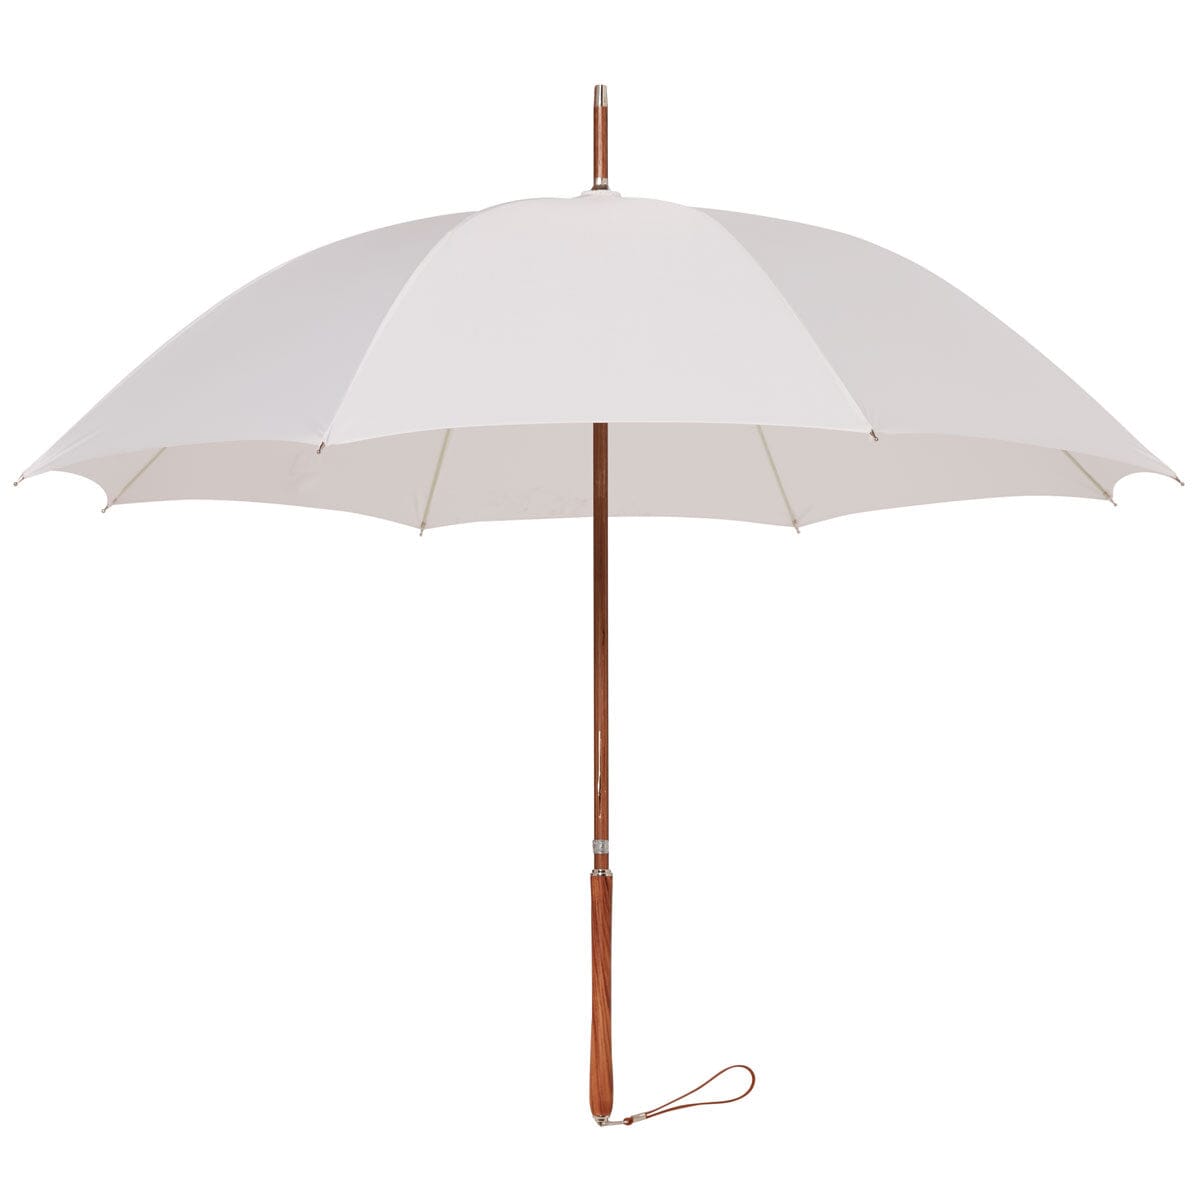 The Rain Umbrella - Antique White